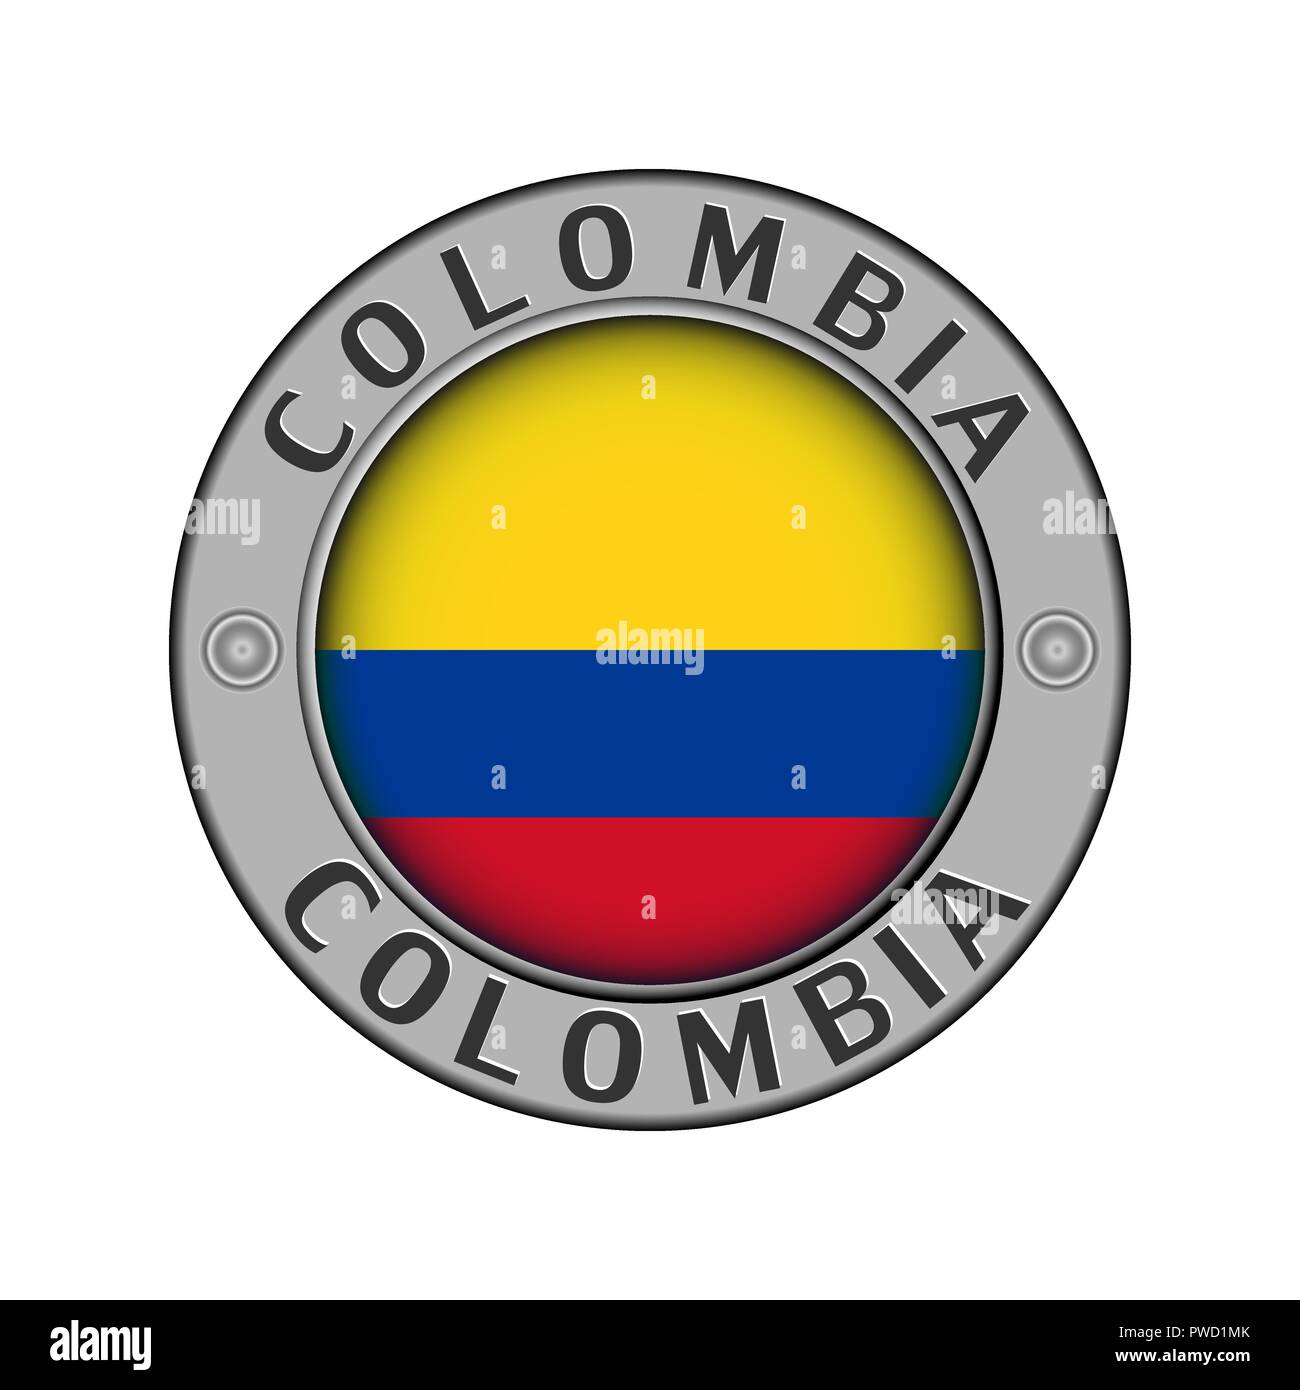 Rotondo di metallo medaglione con il nome del paese di Colombia e un indicatore rotondo nel centro Illustrazione Vettoriale